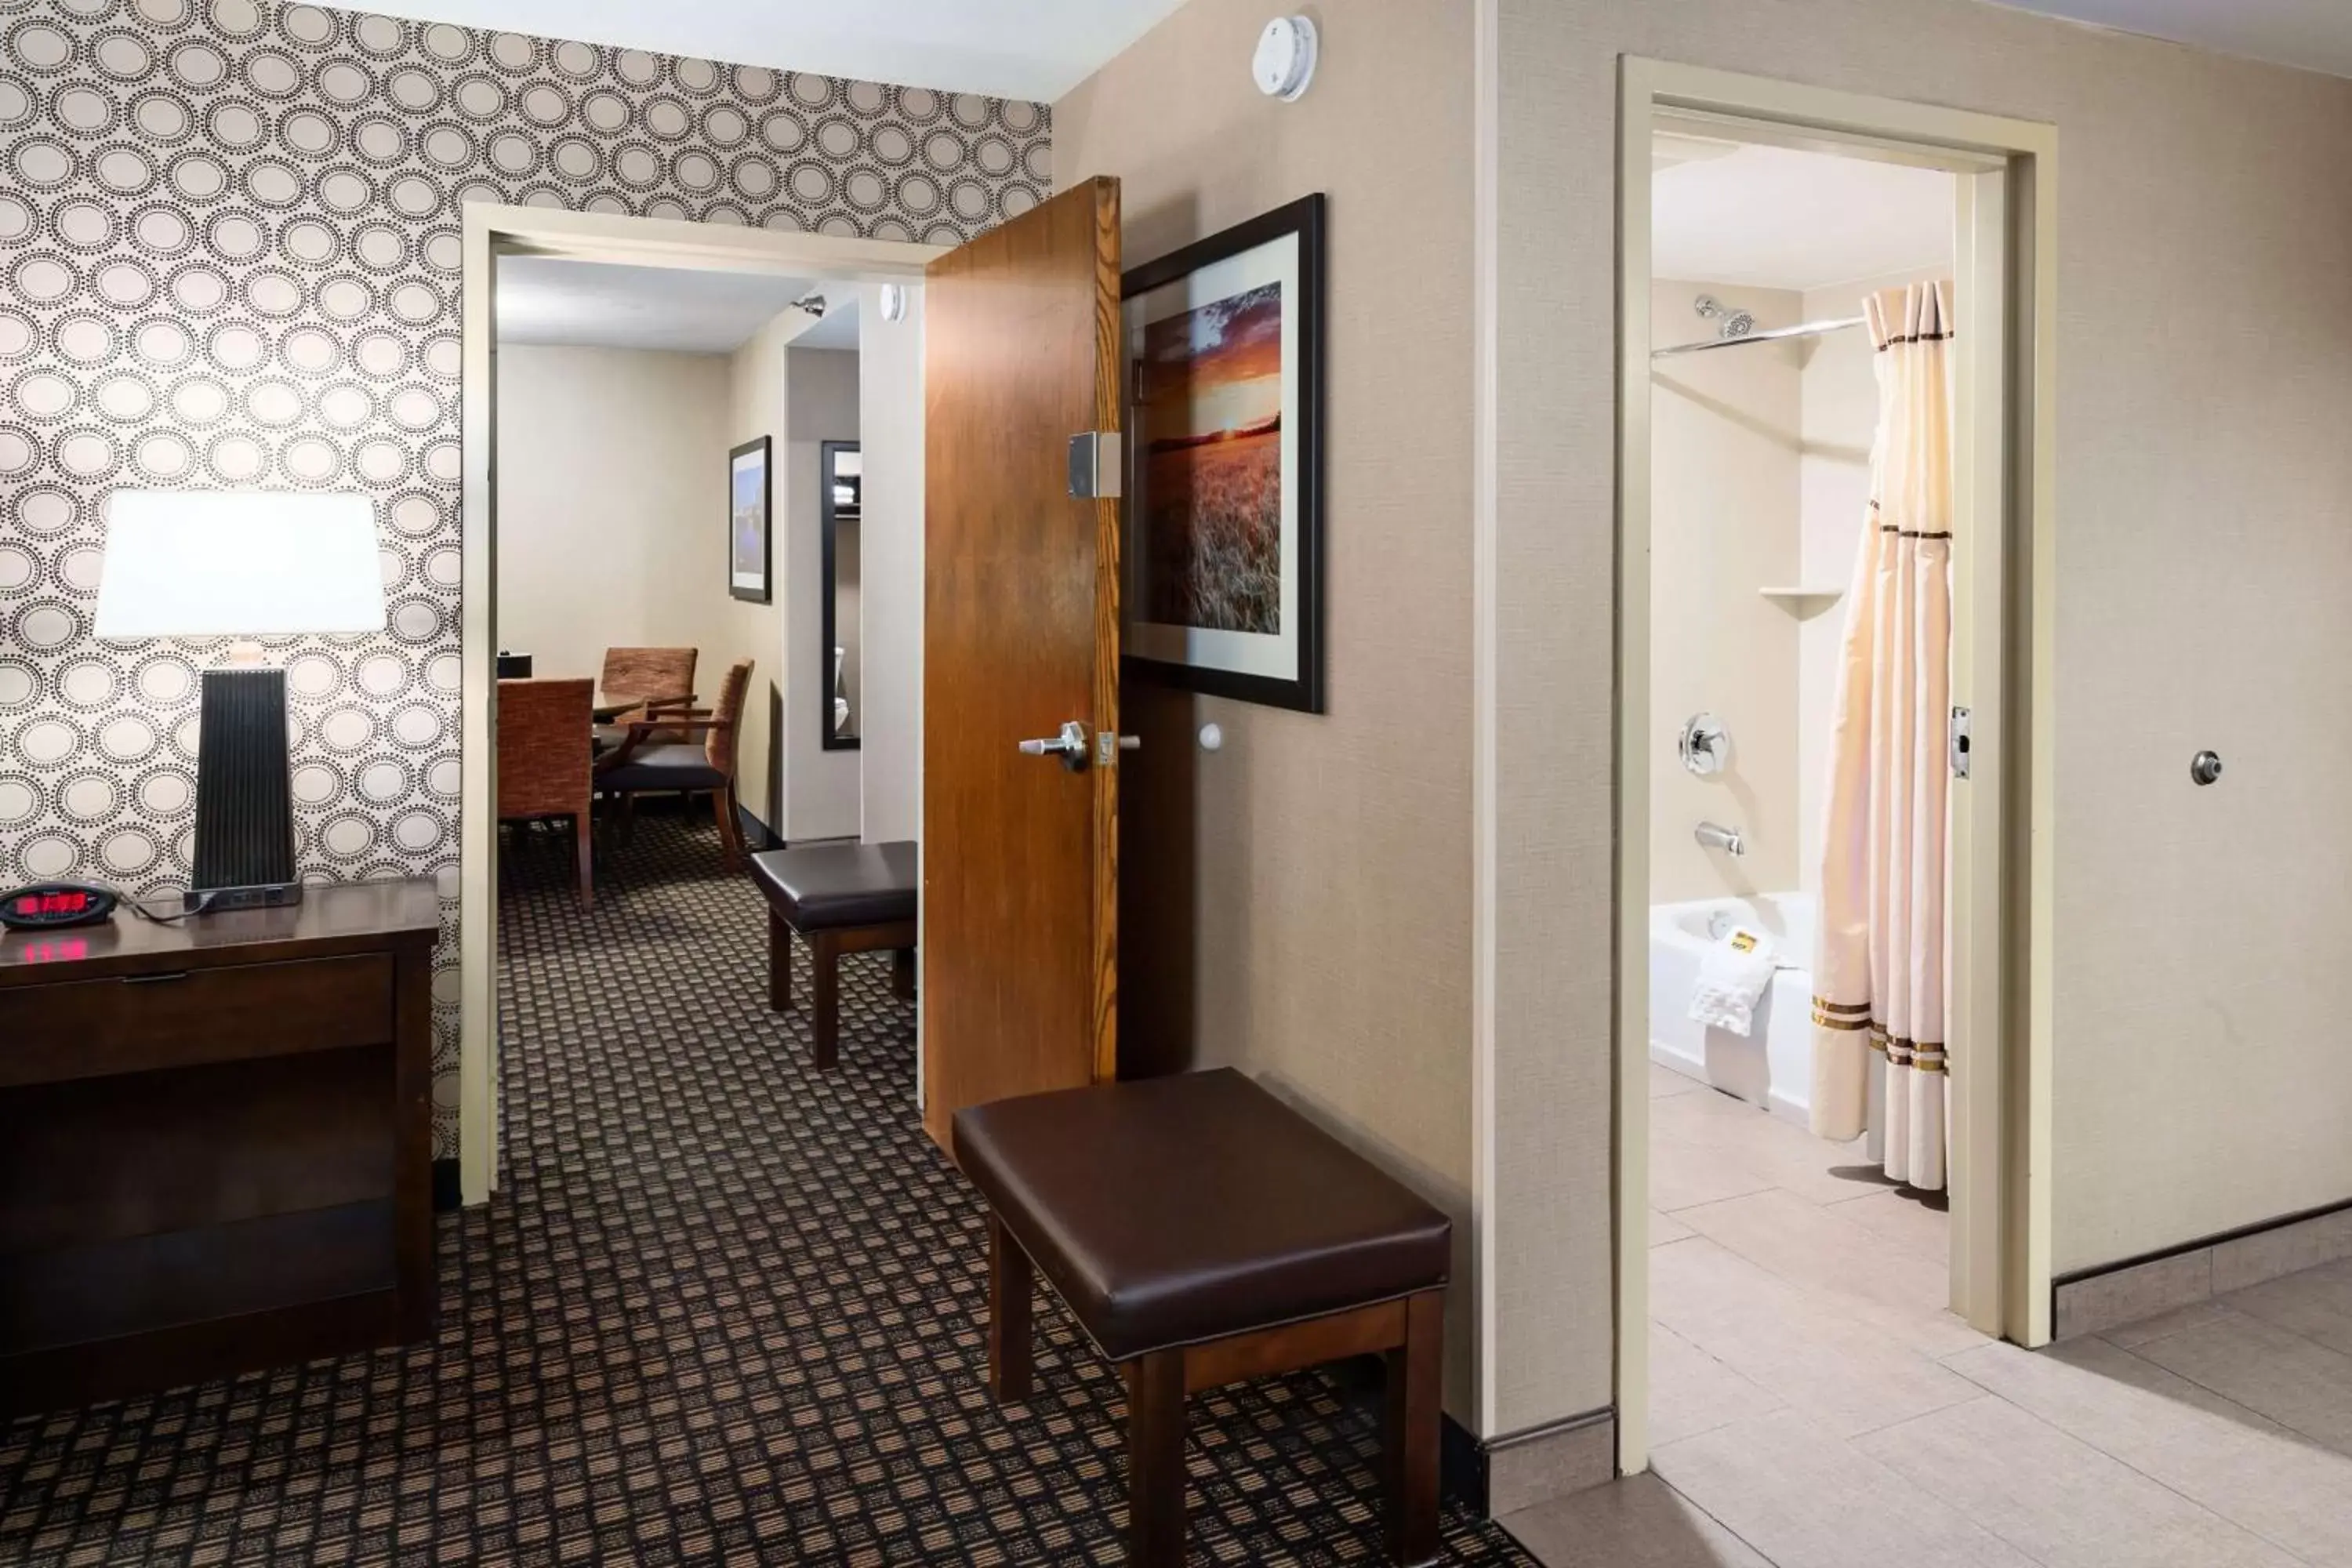 Bedroom, Bathroom in Best Western Plus Ramkota Hotel